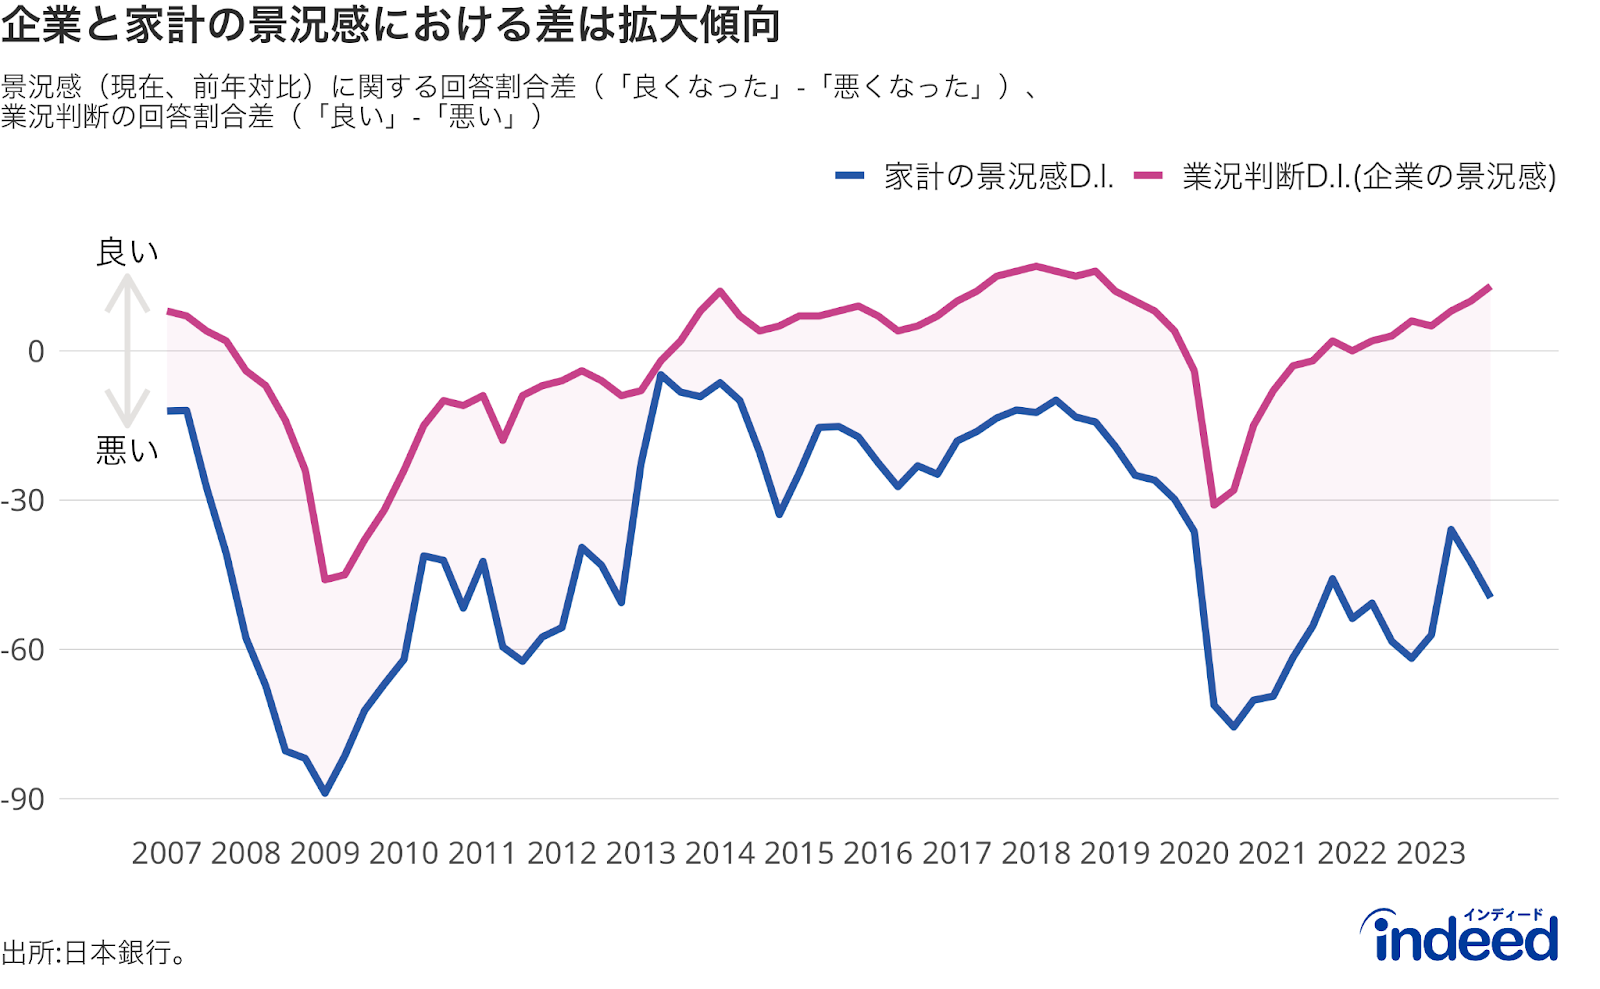 業況判断D.I.: 「日銀短観（日本銀行の全国企業短期経済観測調査）」で発表される景気の判断指数。「景気が良い」と感じている企業の割合から、「景気が悪い」と感じている企業の割合を引いたもの。

家計の景況感D.I.: 日本銀行の「生活意識に関するアンケート調査」における家計の景況感指数。「景気が1年前と比べて良くなった」と回答する家計の割合から「景気が1年前と比べて悪くなった」と回答する家計の割合を引いたもの。